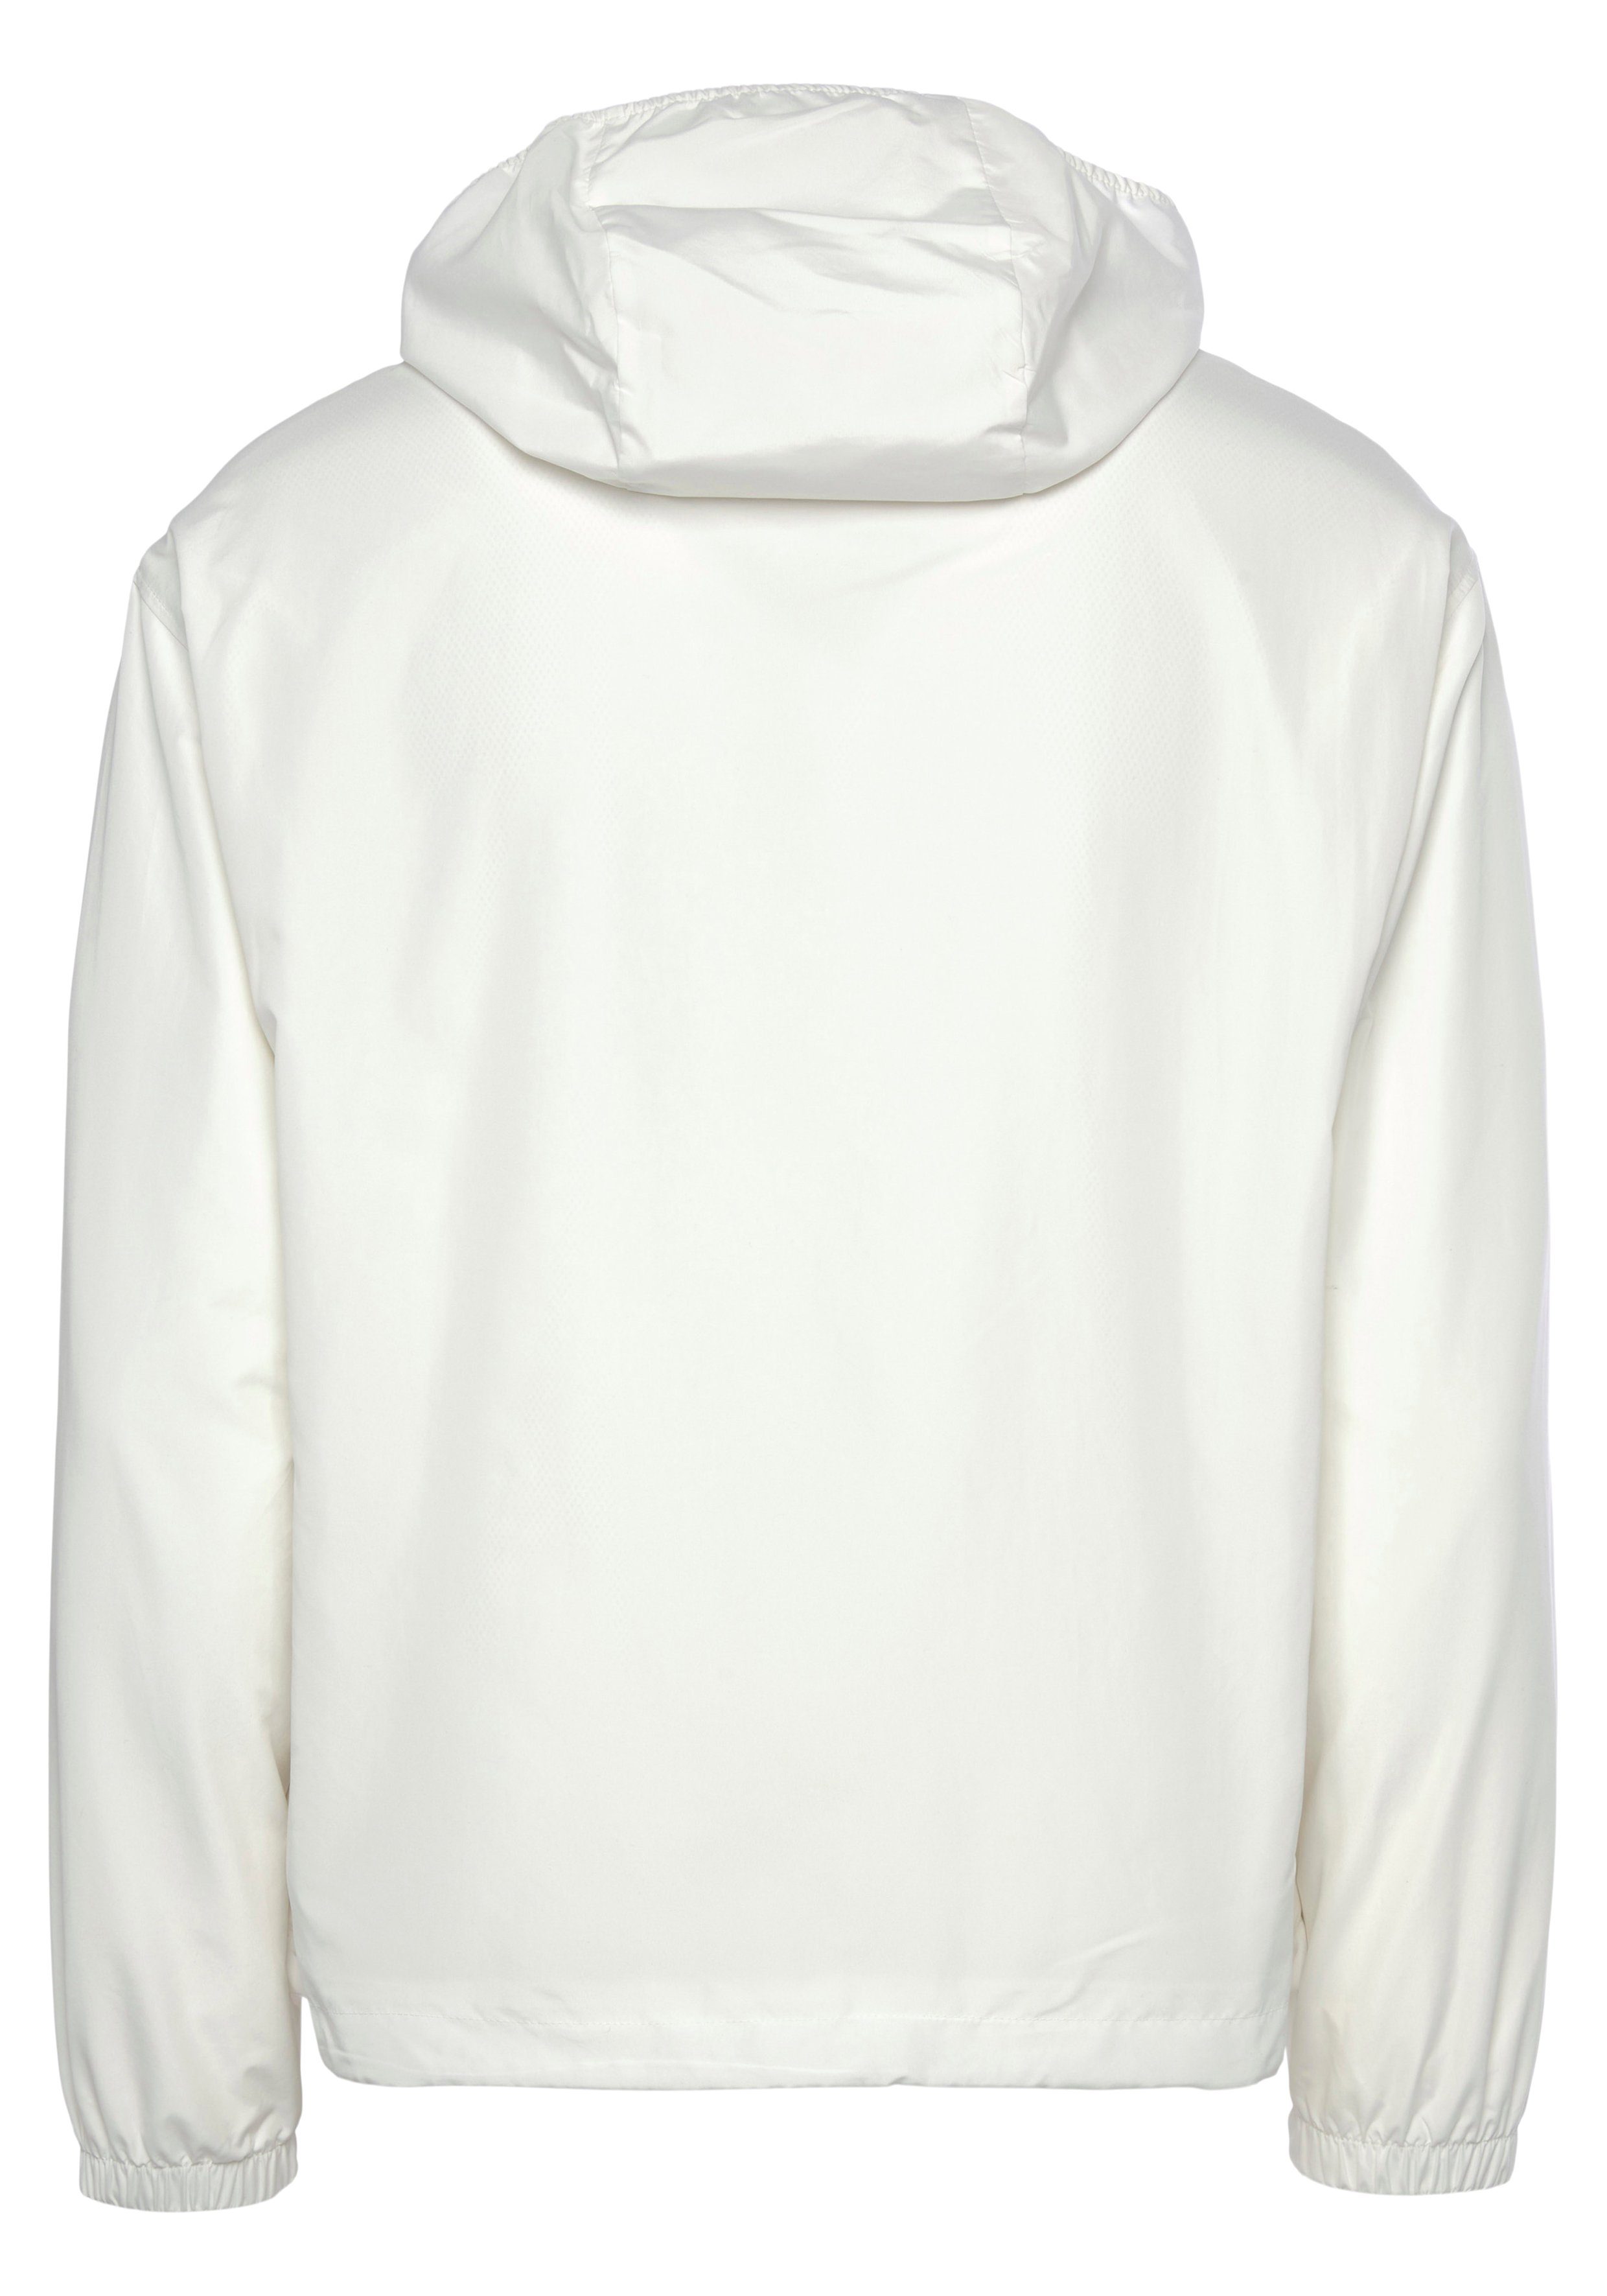 Lacoste Trainingsjacke TRAININGSJACKE Jacke wasserabweisende Tennis mit Kapuze, abnehmbarer weiß für Perfekt